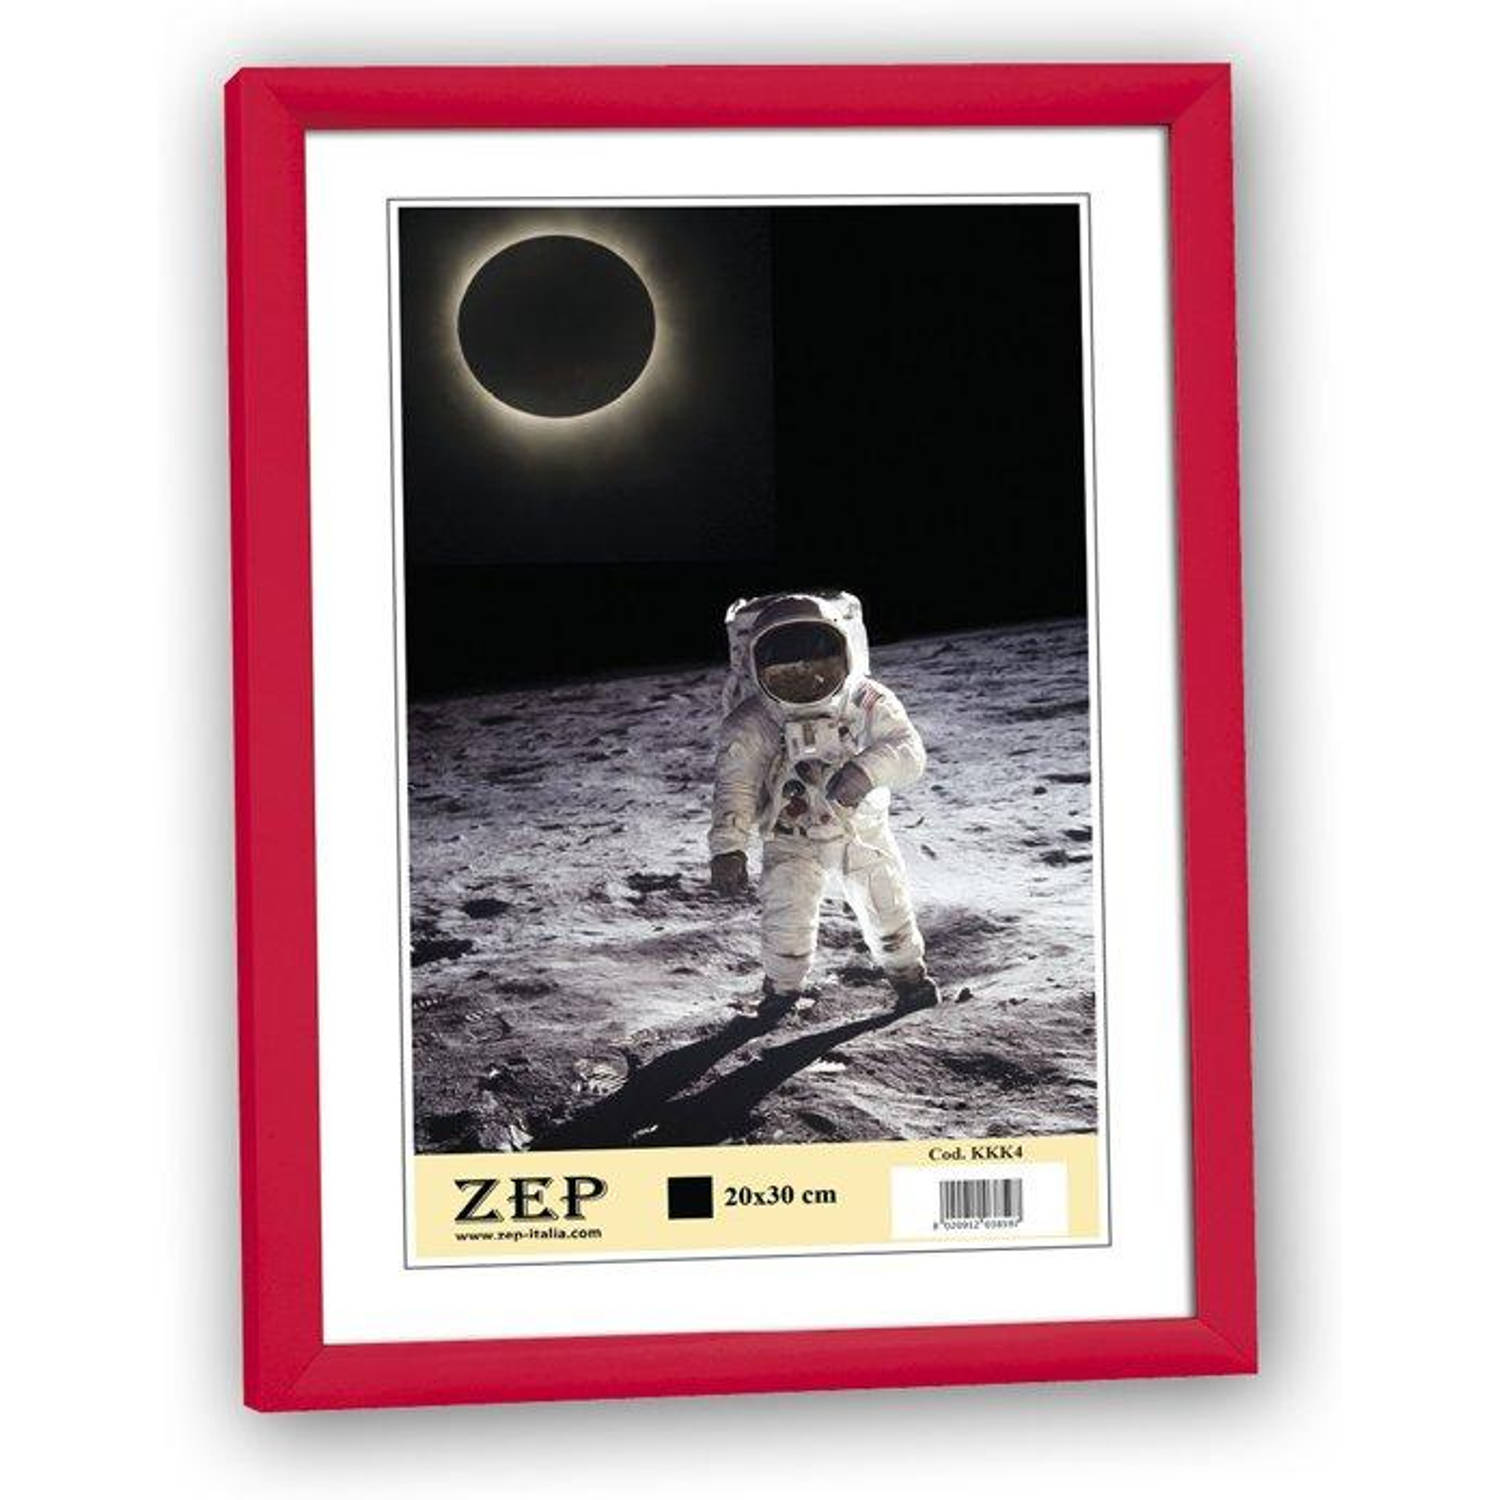 ZEP - Kunststof Fotolijst ""New Easy"" Rood voor foto formaat 20x30 - KR4